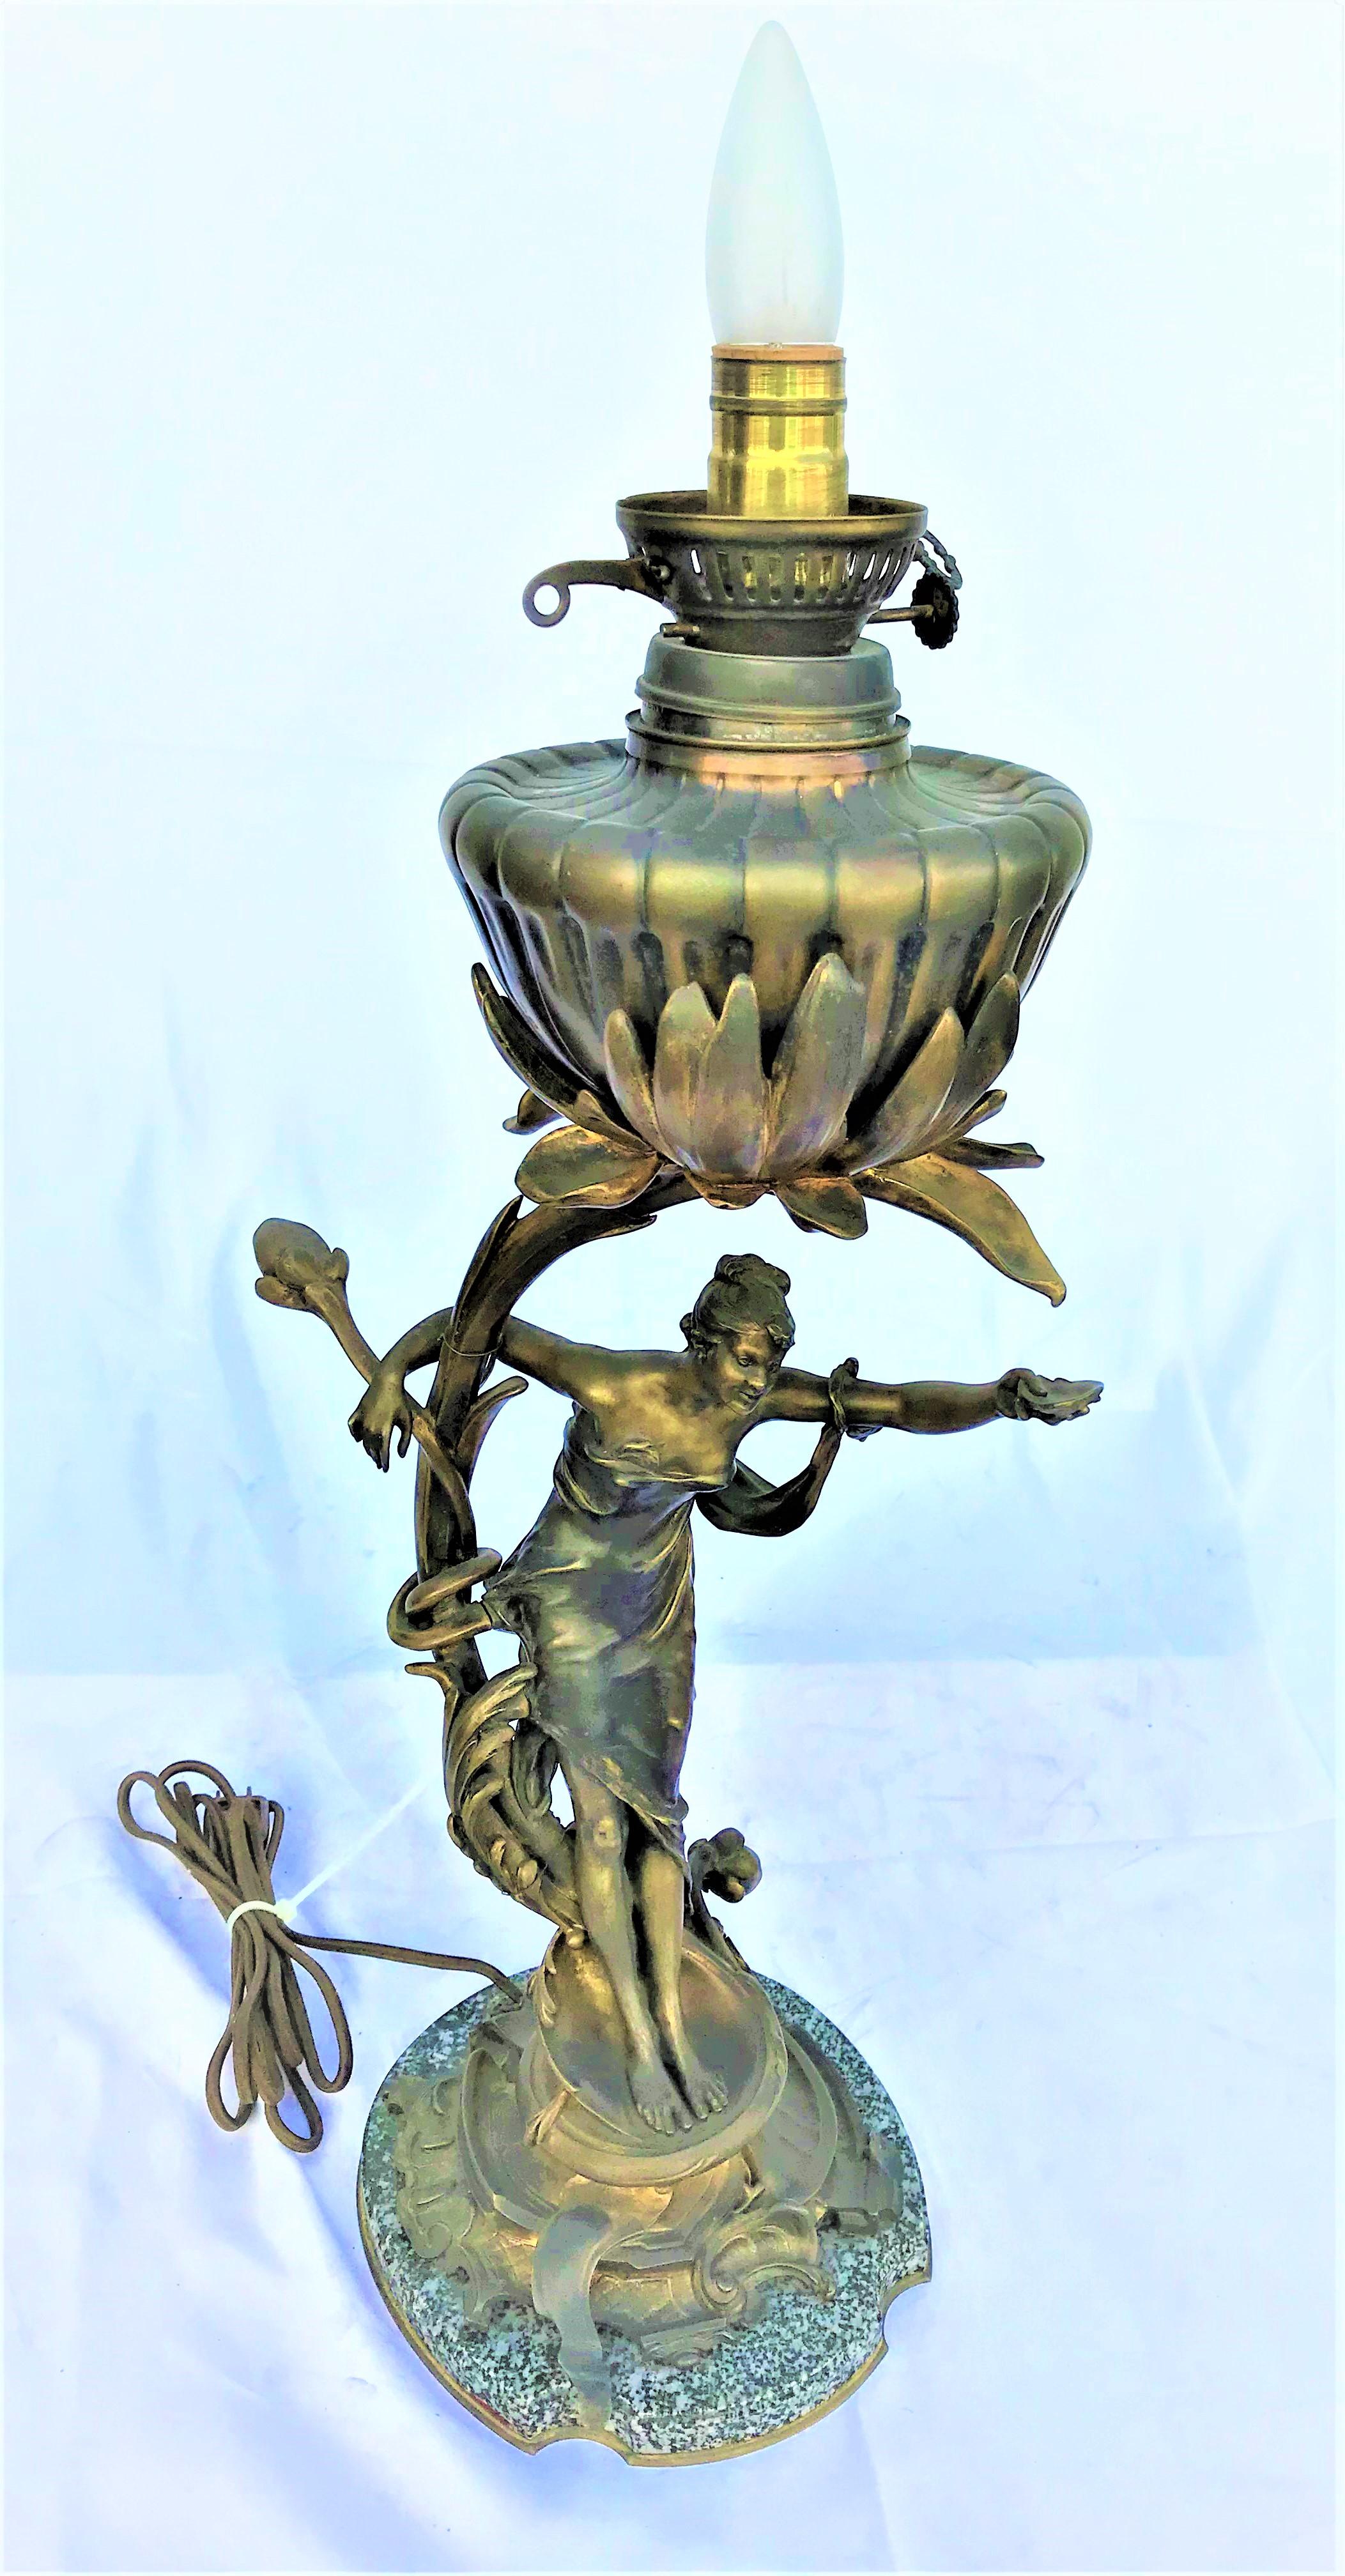 Lampe Art Nouveau en bronze datant des années 1890. C'était une lampe à huile originale qui a été convertie il y a longtemps en lampe électrique. Un très bon travail. L'abat-jour et l'ouragan sont des verres plus récents. Grande hauteur totale de 31